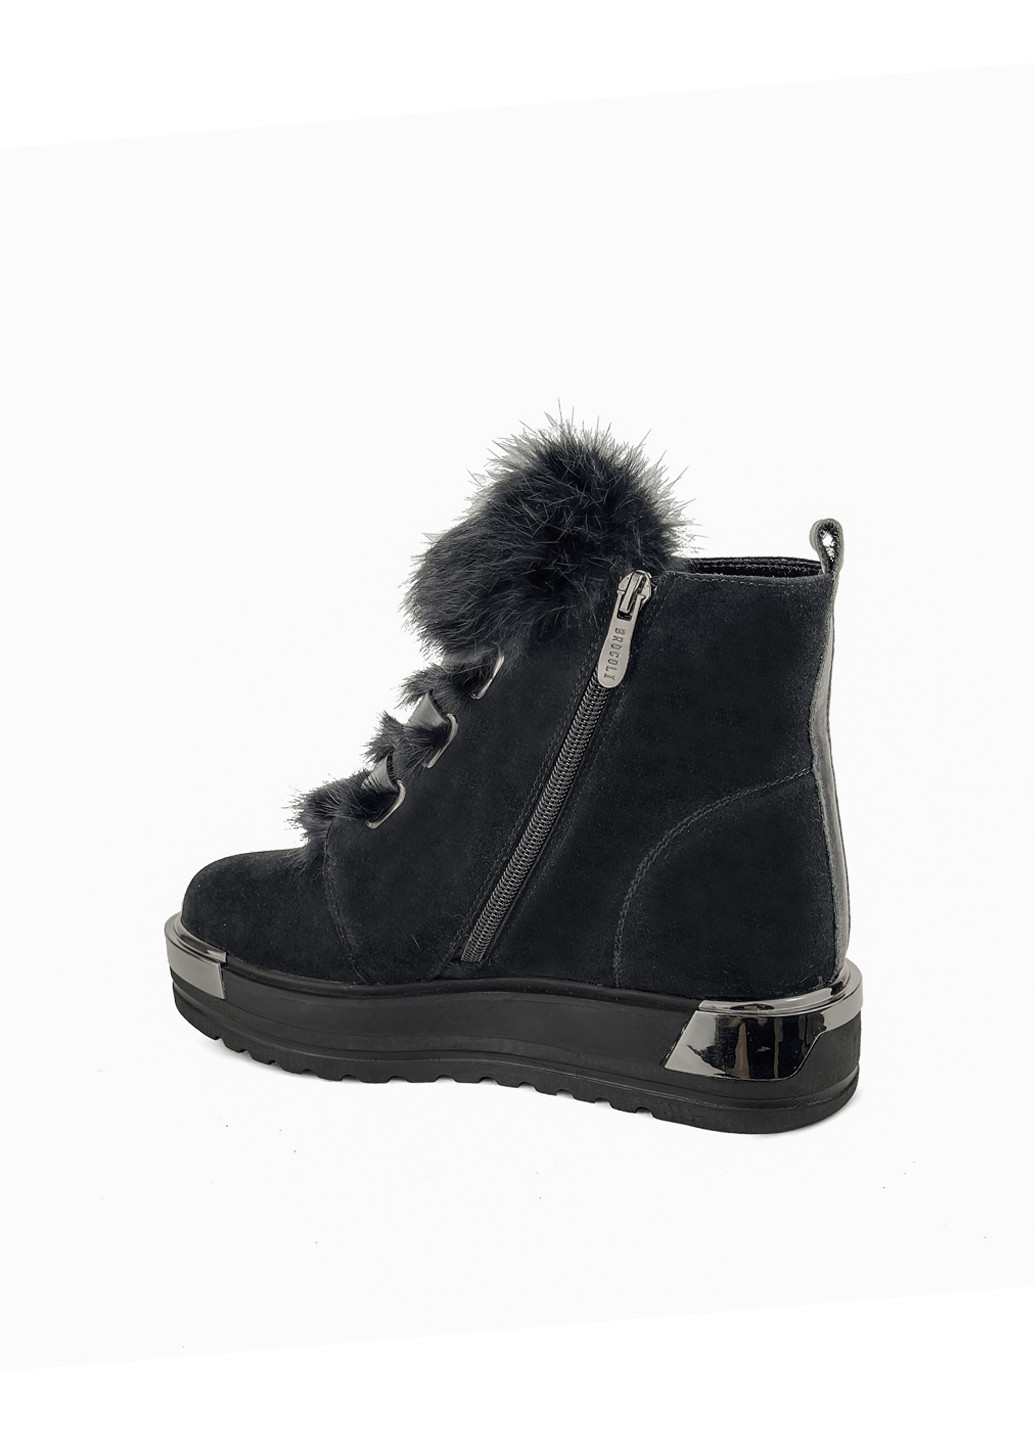 Зимние ботинки зимние женские черные замшевые с мехом на платформе Brocoli из натуральной замши